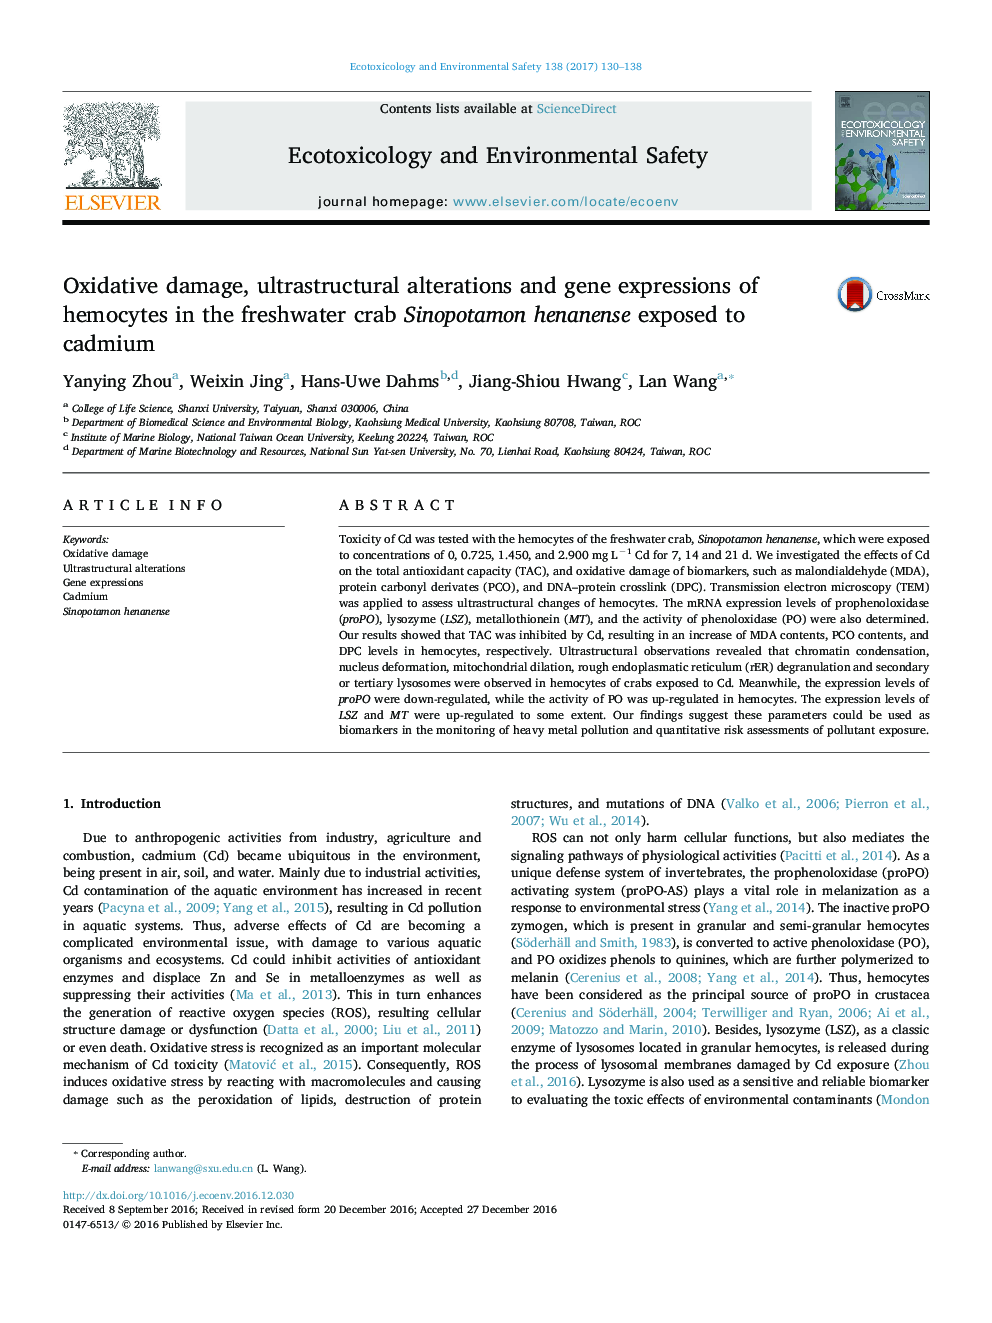 آسیب اکسیداتیو، تغییرات فراصوتی و بیان ژن های هموسیت ها در خرچنگ آب شیرین سینوپاتامون هنانژن در معرض کادمیوم 